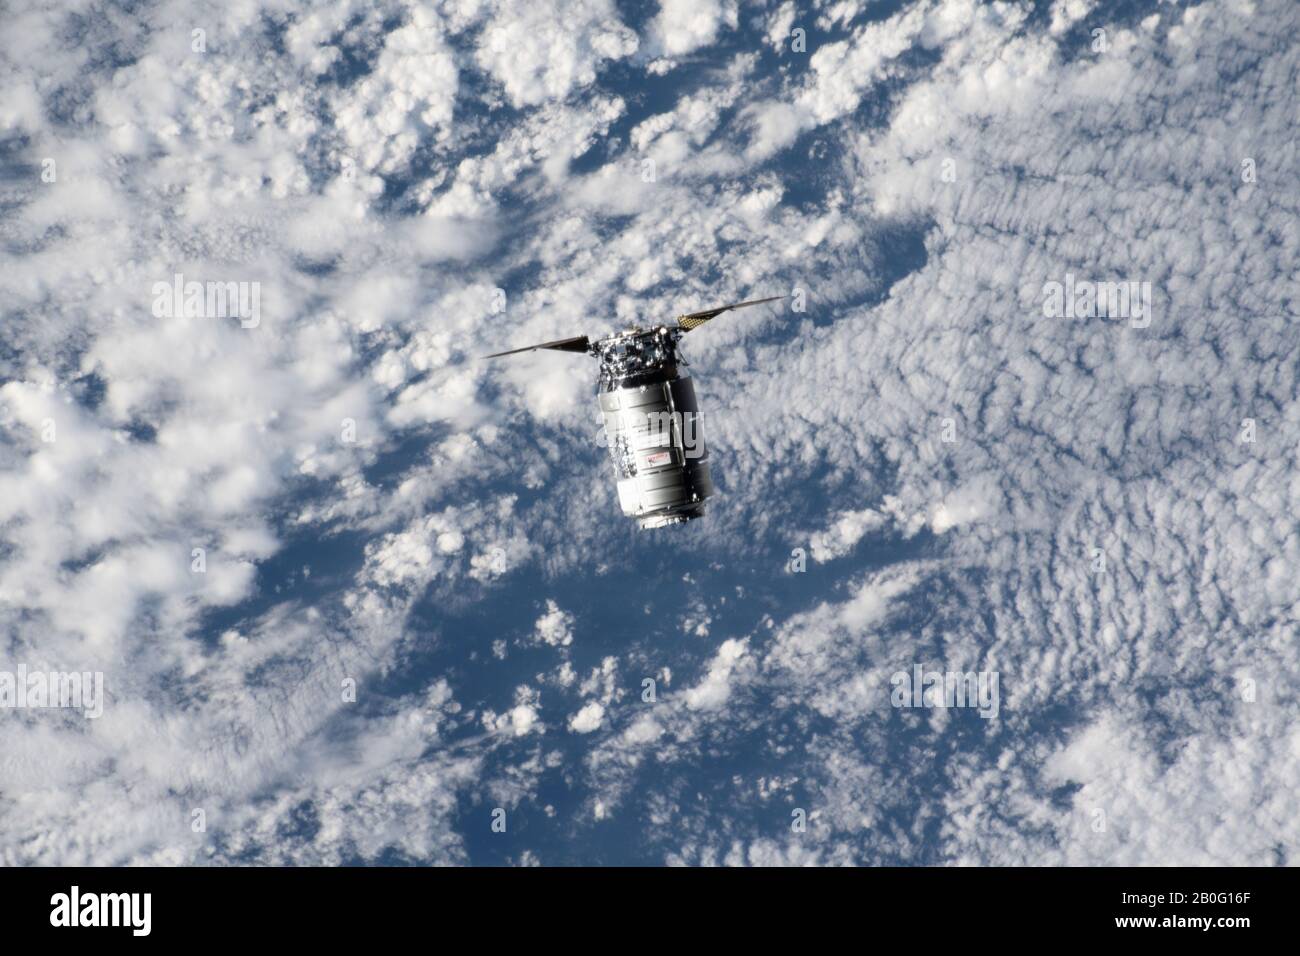 La nave espacial Northrop Grumman Cygnus con los distintos paneles solares en forma de cimbal se aproxima a la Estación Espacial Internacional para atracar el 18 de febrero de 2020 en Órbita terrestre. La nave de carga no tripulada está llevando más de 7,500 libras de suministros para la tripulación del laboratorio de orbitación. Foto de stock